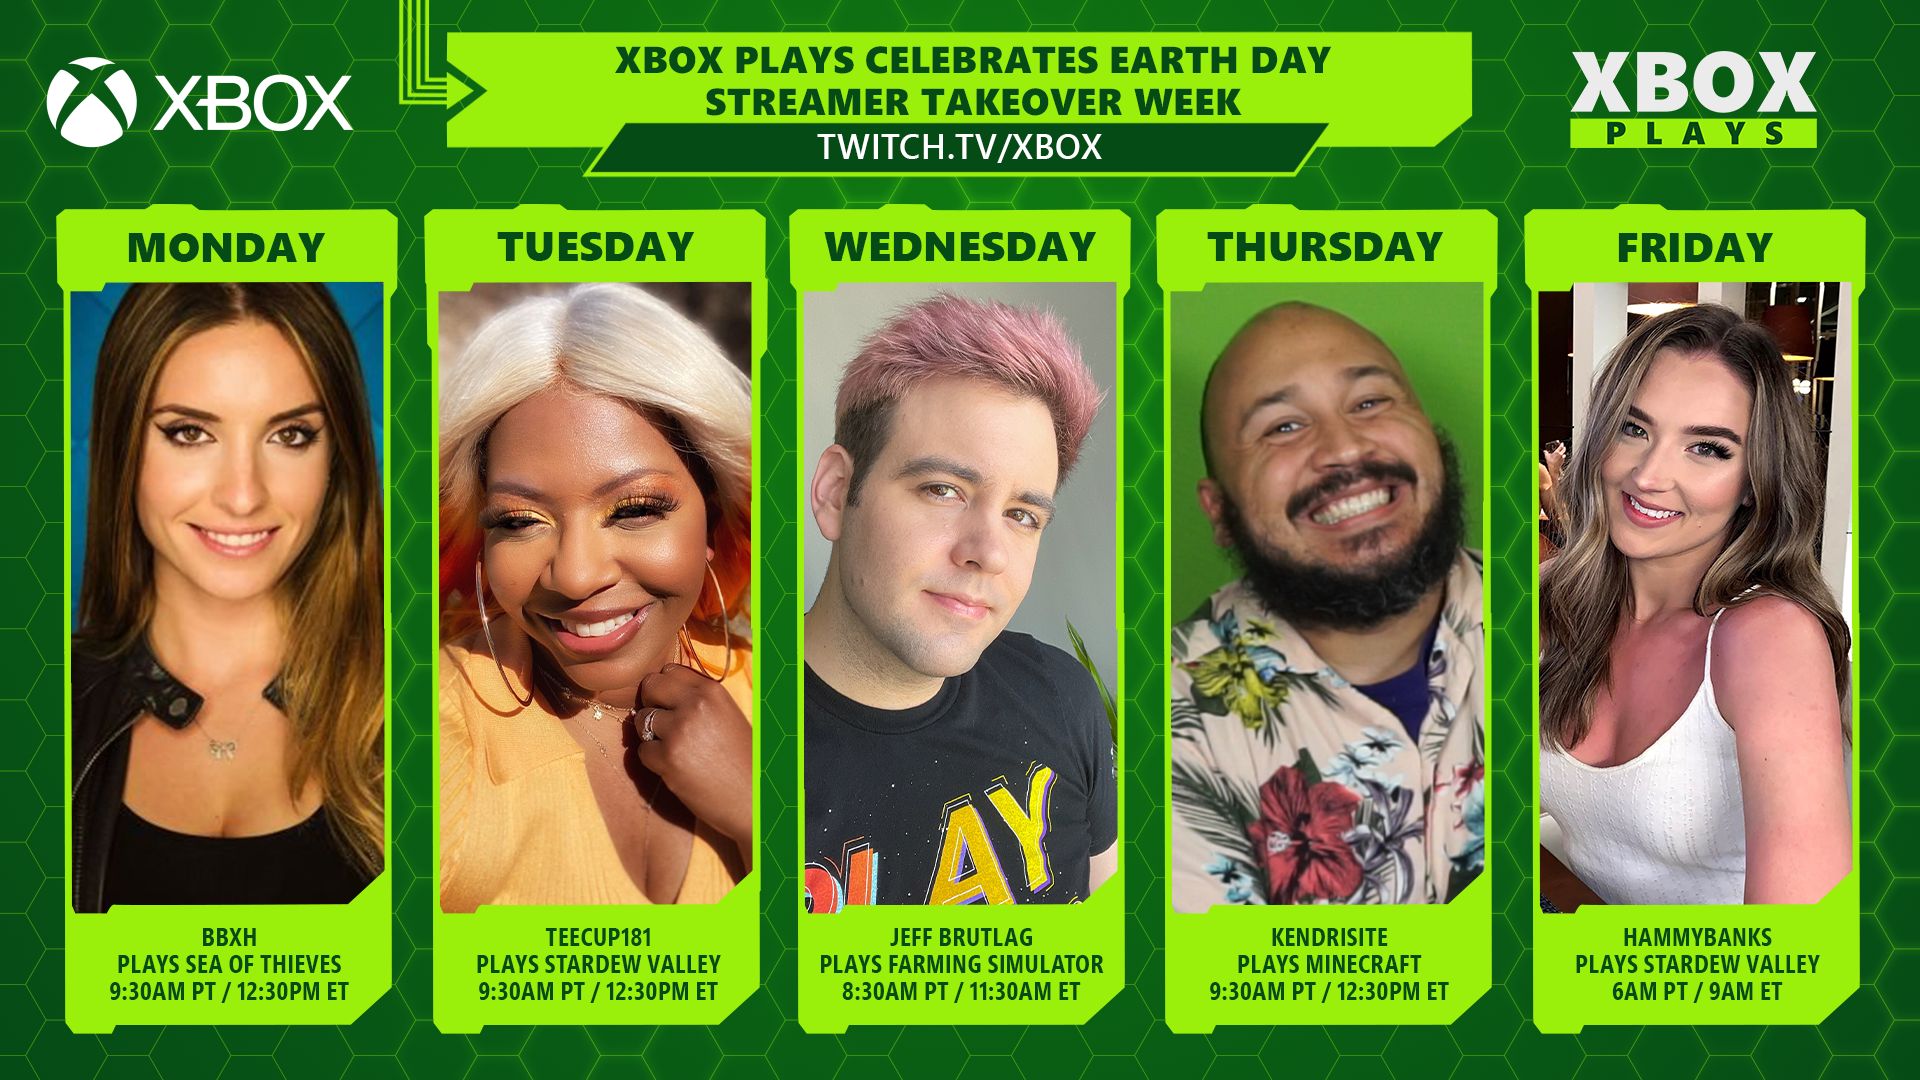 Xbox Plays feiert Earth Day mit einer Streamer-Takeover-Woche mit BBXH, TEECUP181, JEFF BRUTLAG, KENDRISITE and HAMMYBANKS.